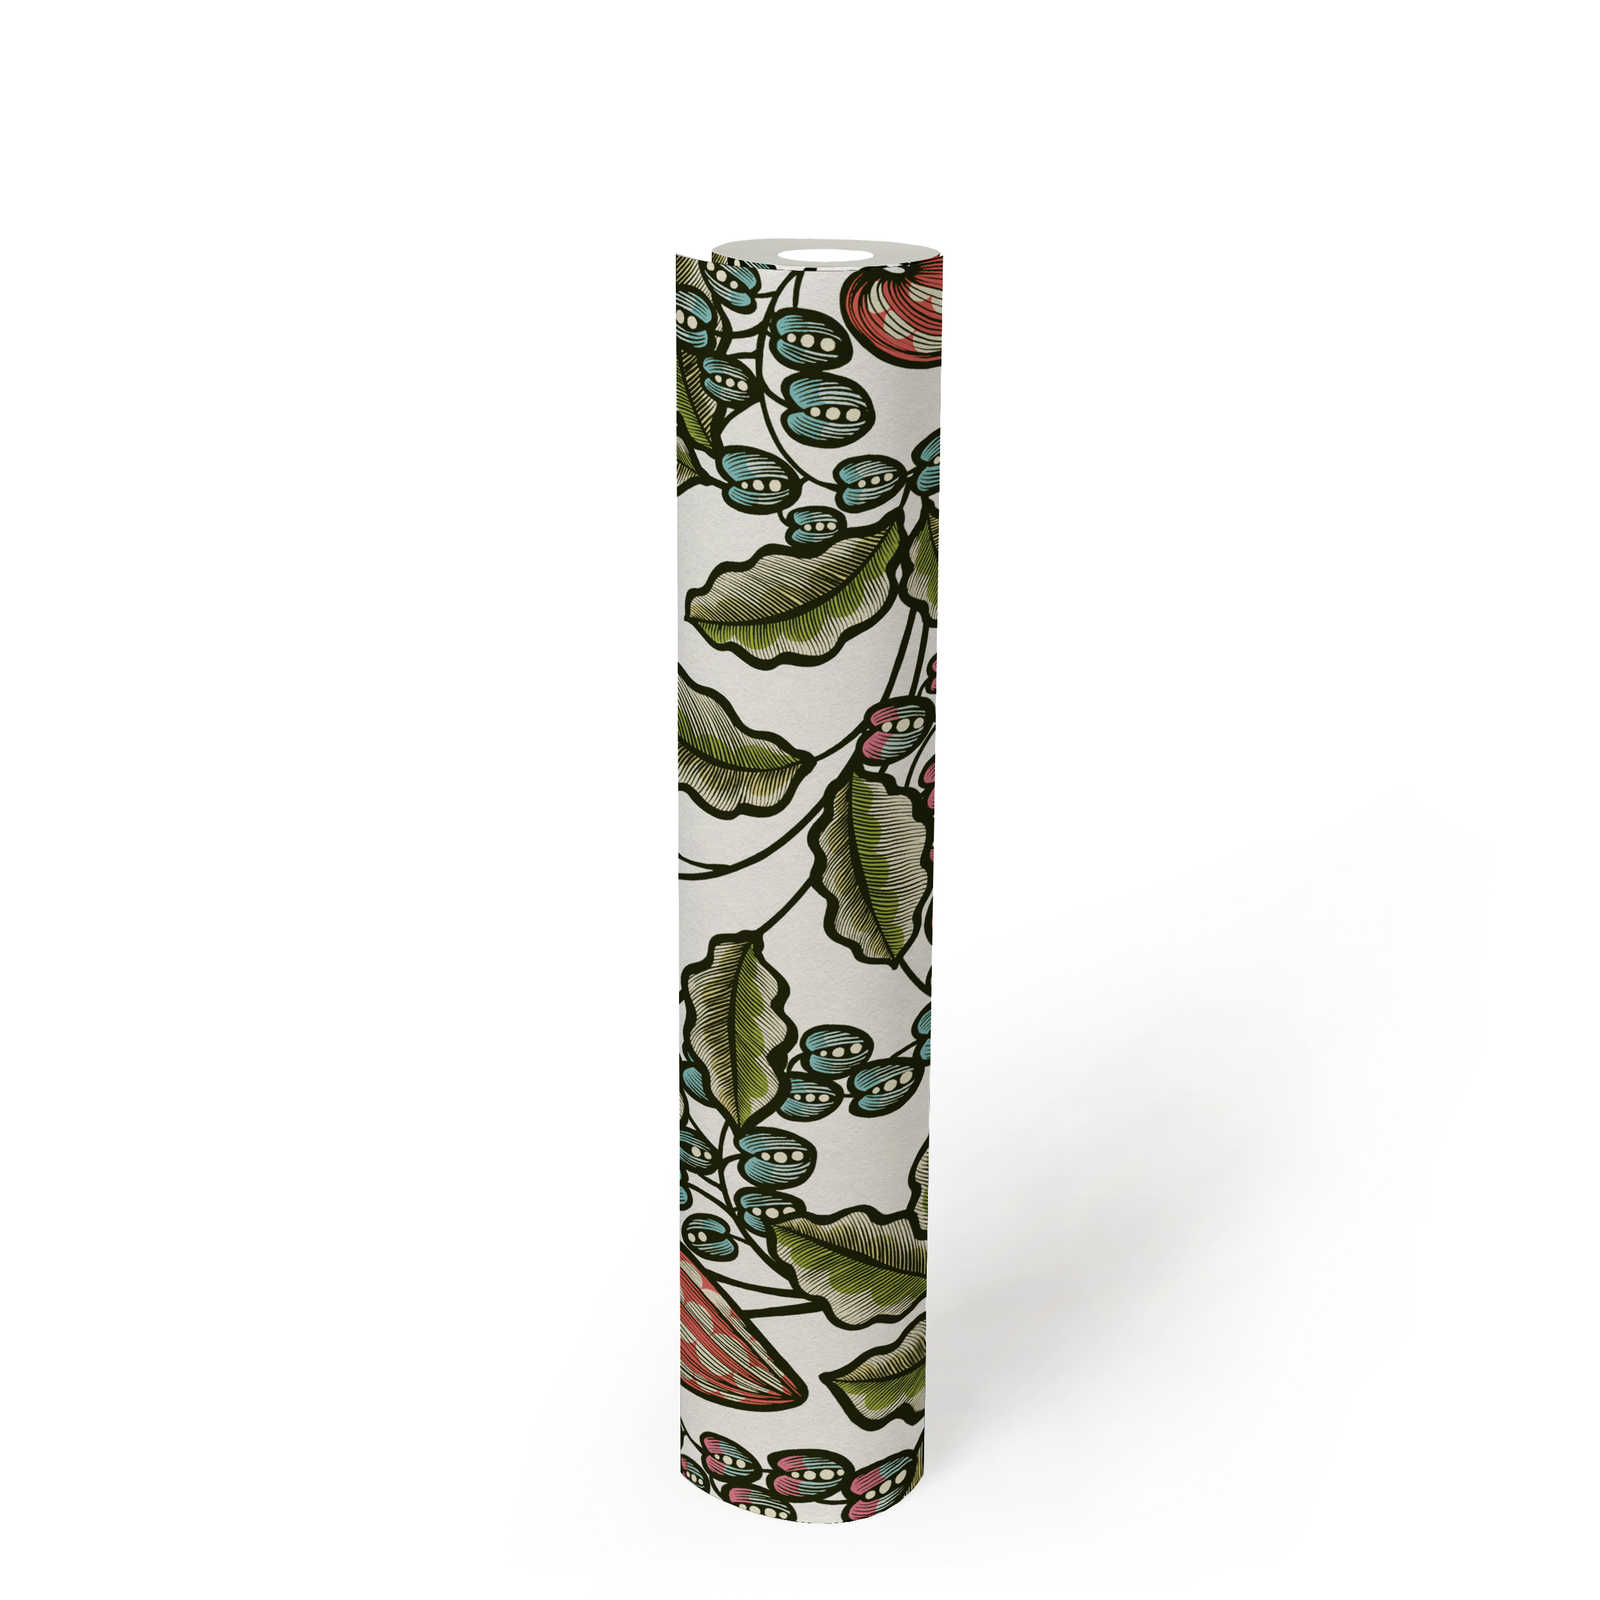             Papel pintado floral diseño de la naturaleza estampado escandinavo - multicolor, verde, blanco
        